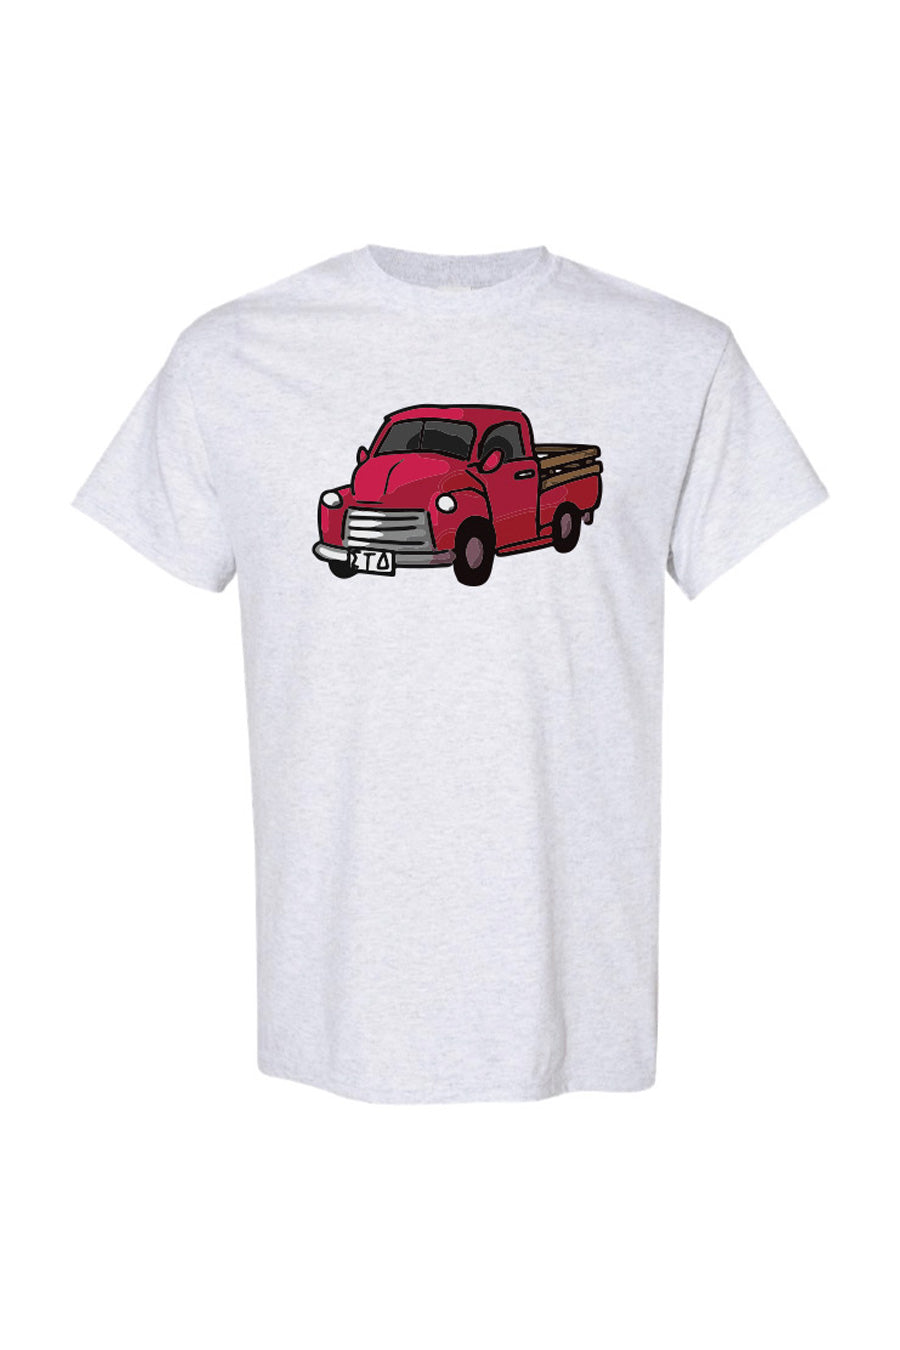 ΣΤΔ through the Decades - The 40s T-shirt (Multiple Colors Available)